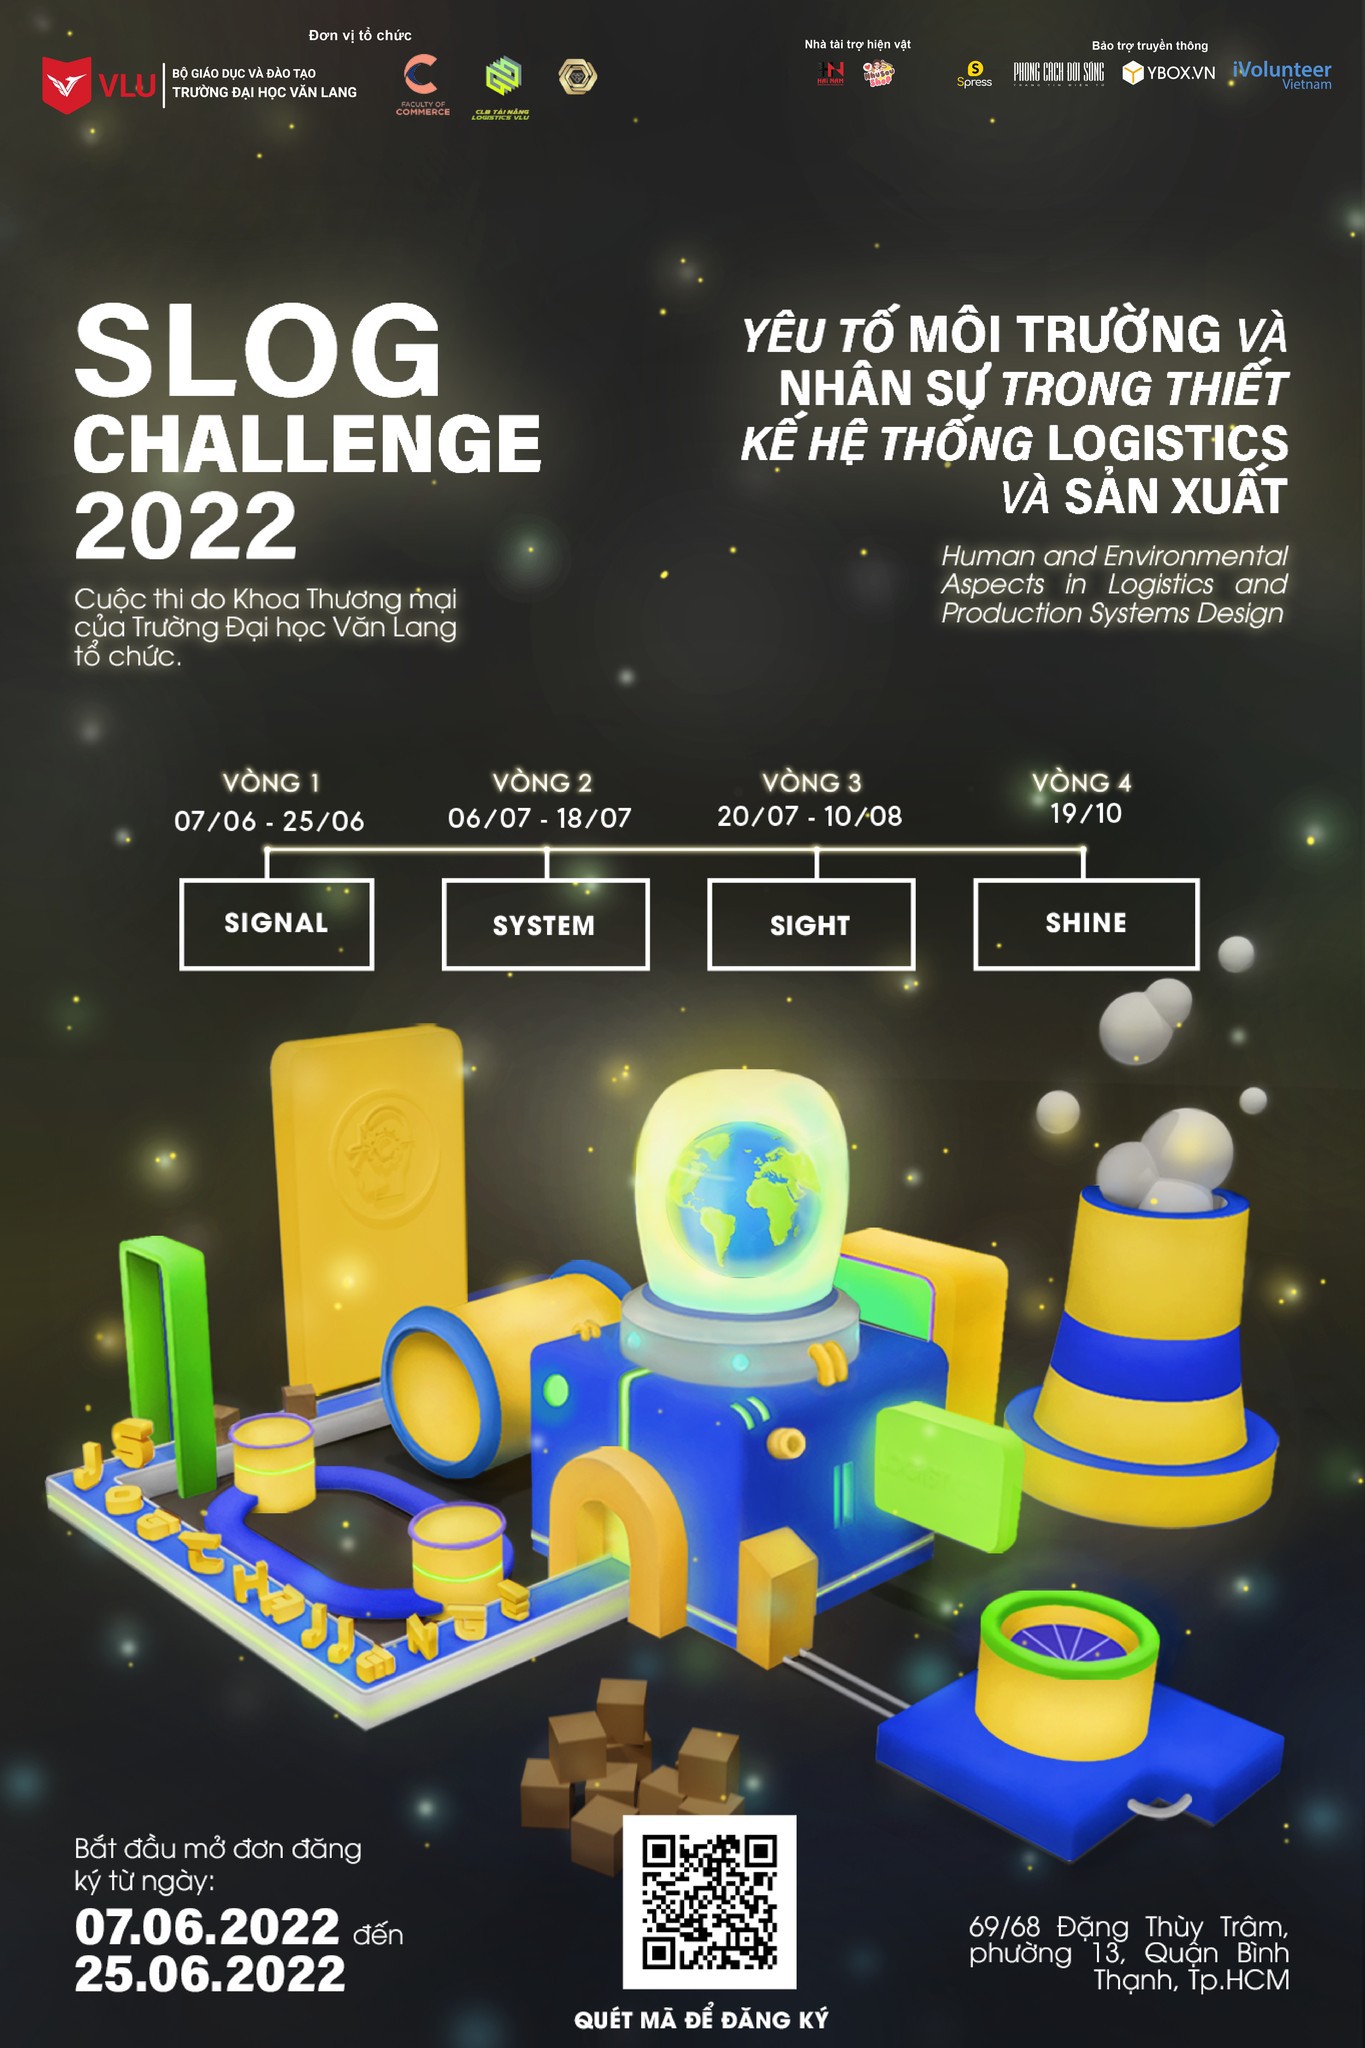 SLOG CHALLENGE 2022 - Cuộc thi học thuật Logistics và quản lý chuỗi cung ứng dành cho sinh viên với tổng giá trị giải thưởng lên đến 80 triệu đồng